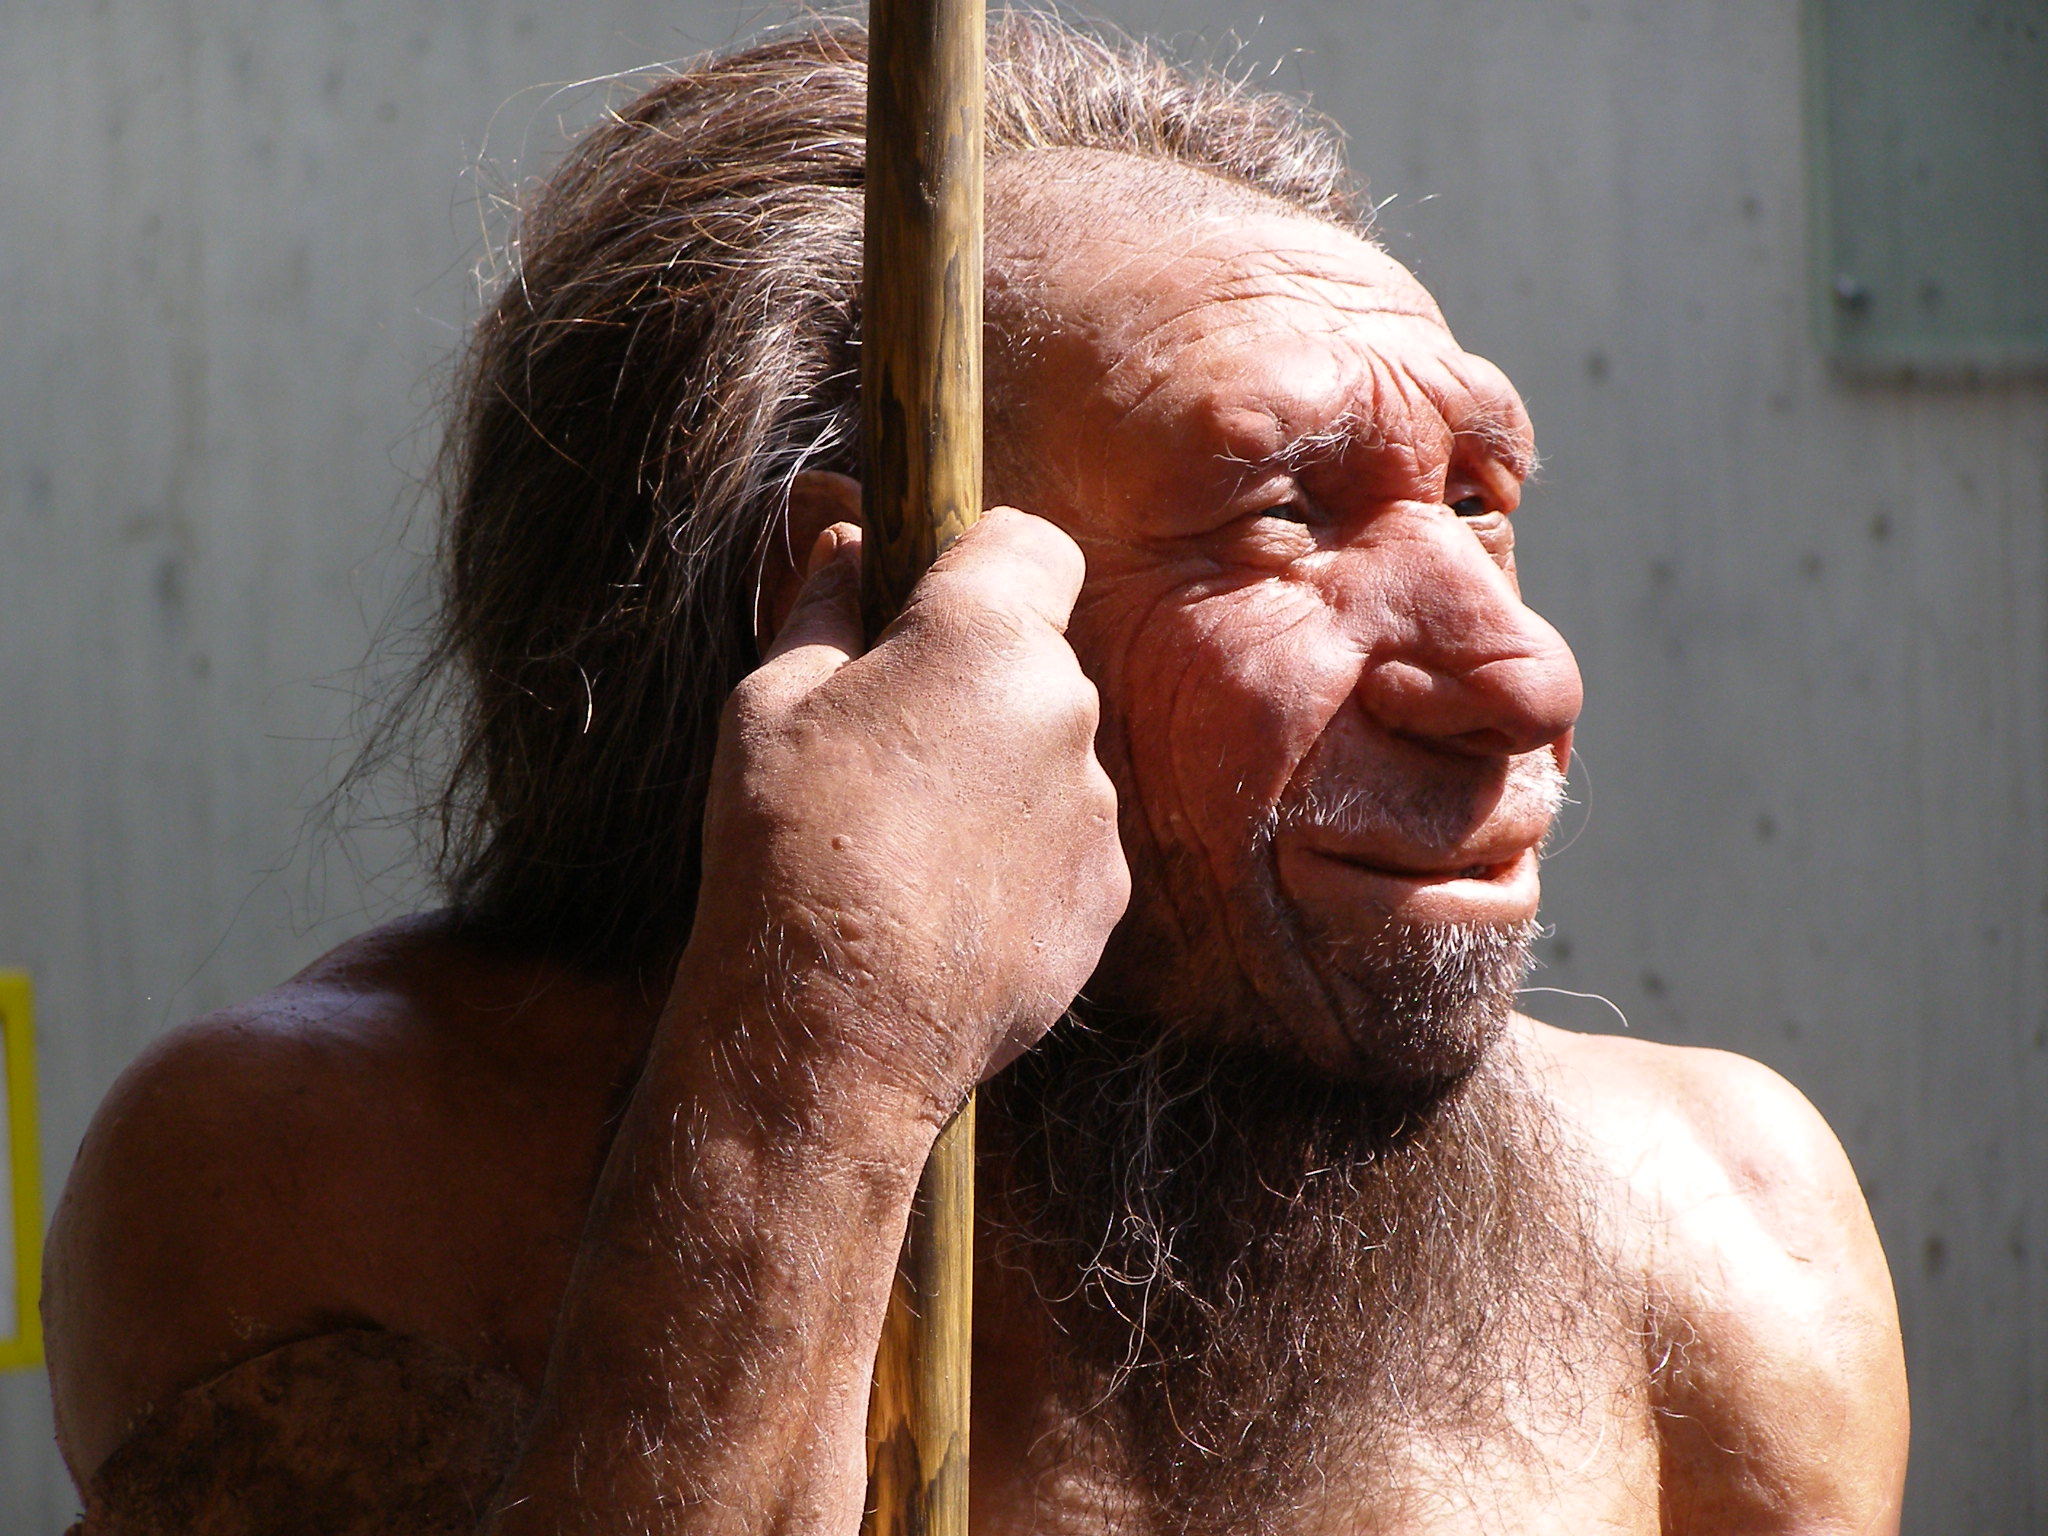 « Les Néandertaliens avaient vécu en Europe et dans l’ouest de l’Asie pendant 200.000 ans avant l’arrivée des humains modernes. Ils étaient probablement bien adaptés au climat, à l’alimentation et aux pathogènes et en s’accouplant avec eux, nous humains modernes avons hérité de ces adaptations avantageuses » explique Janet Kelso qui a signé une des deux études sur ce sujet. © Erich Ferdinand, Flickr, CC BY 2.0